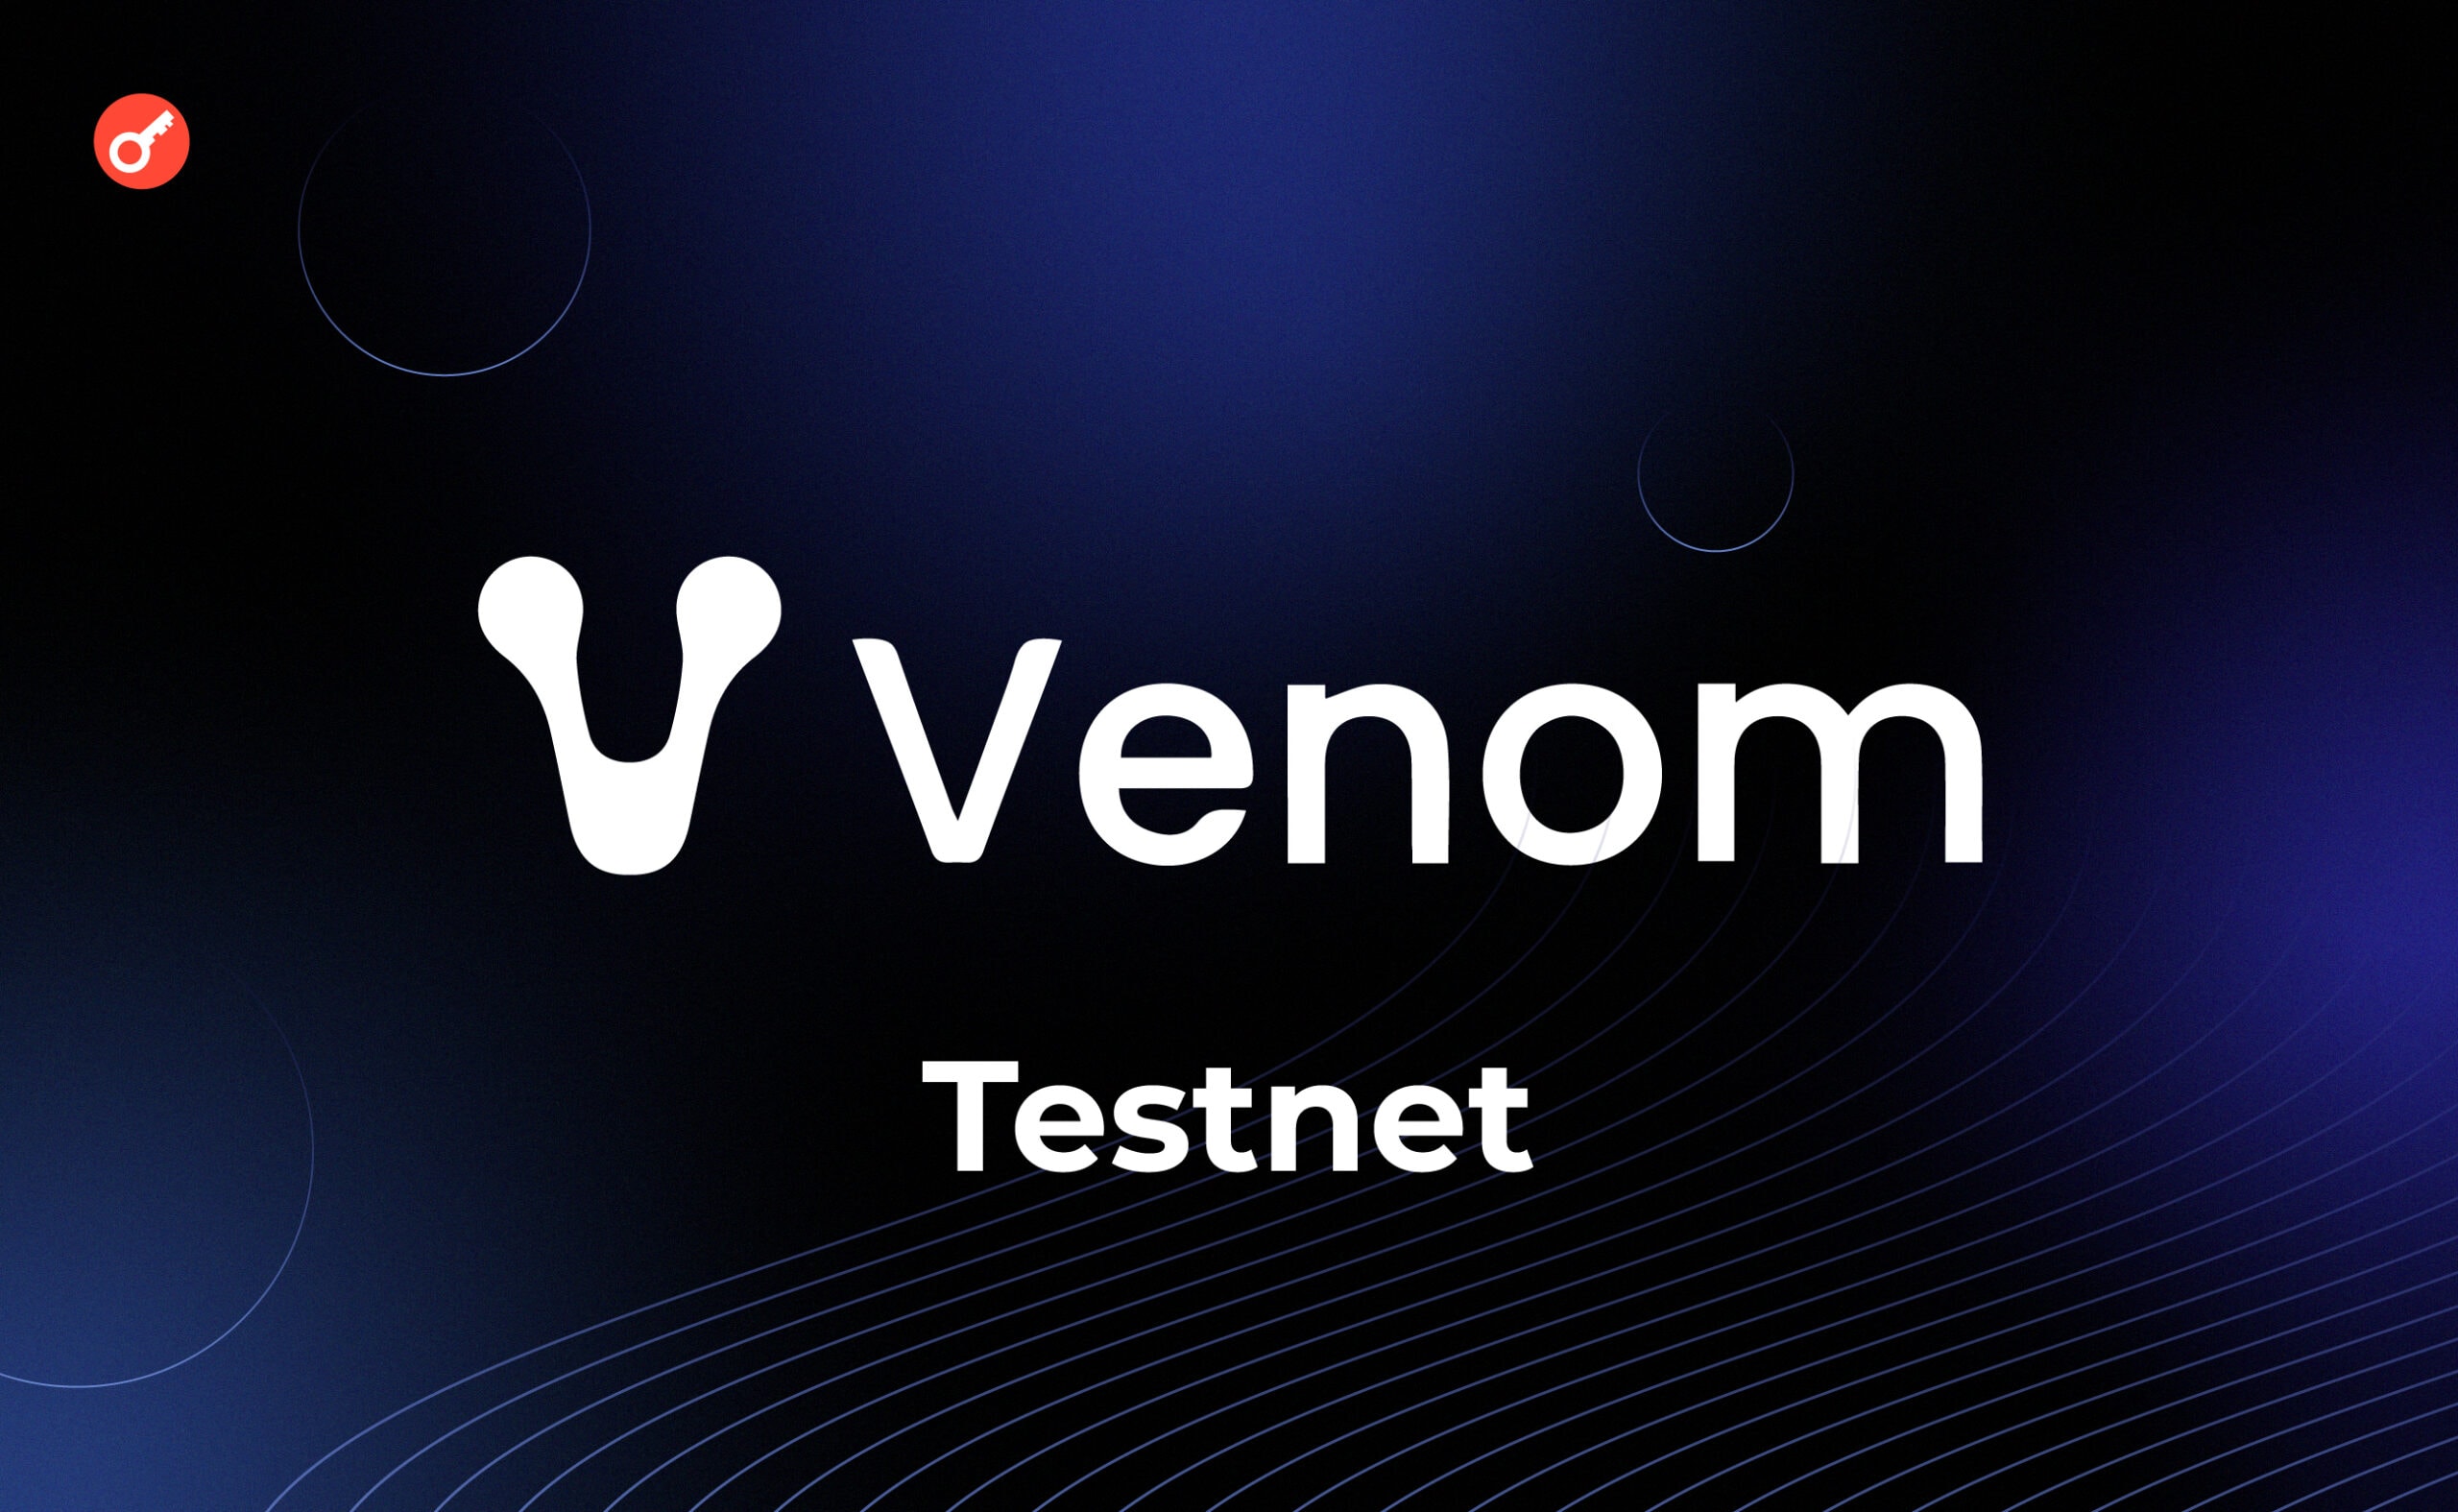 Venom тестнет: обзор на доступные активности в сети. Заглавный коллаж статьи.